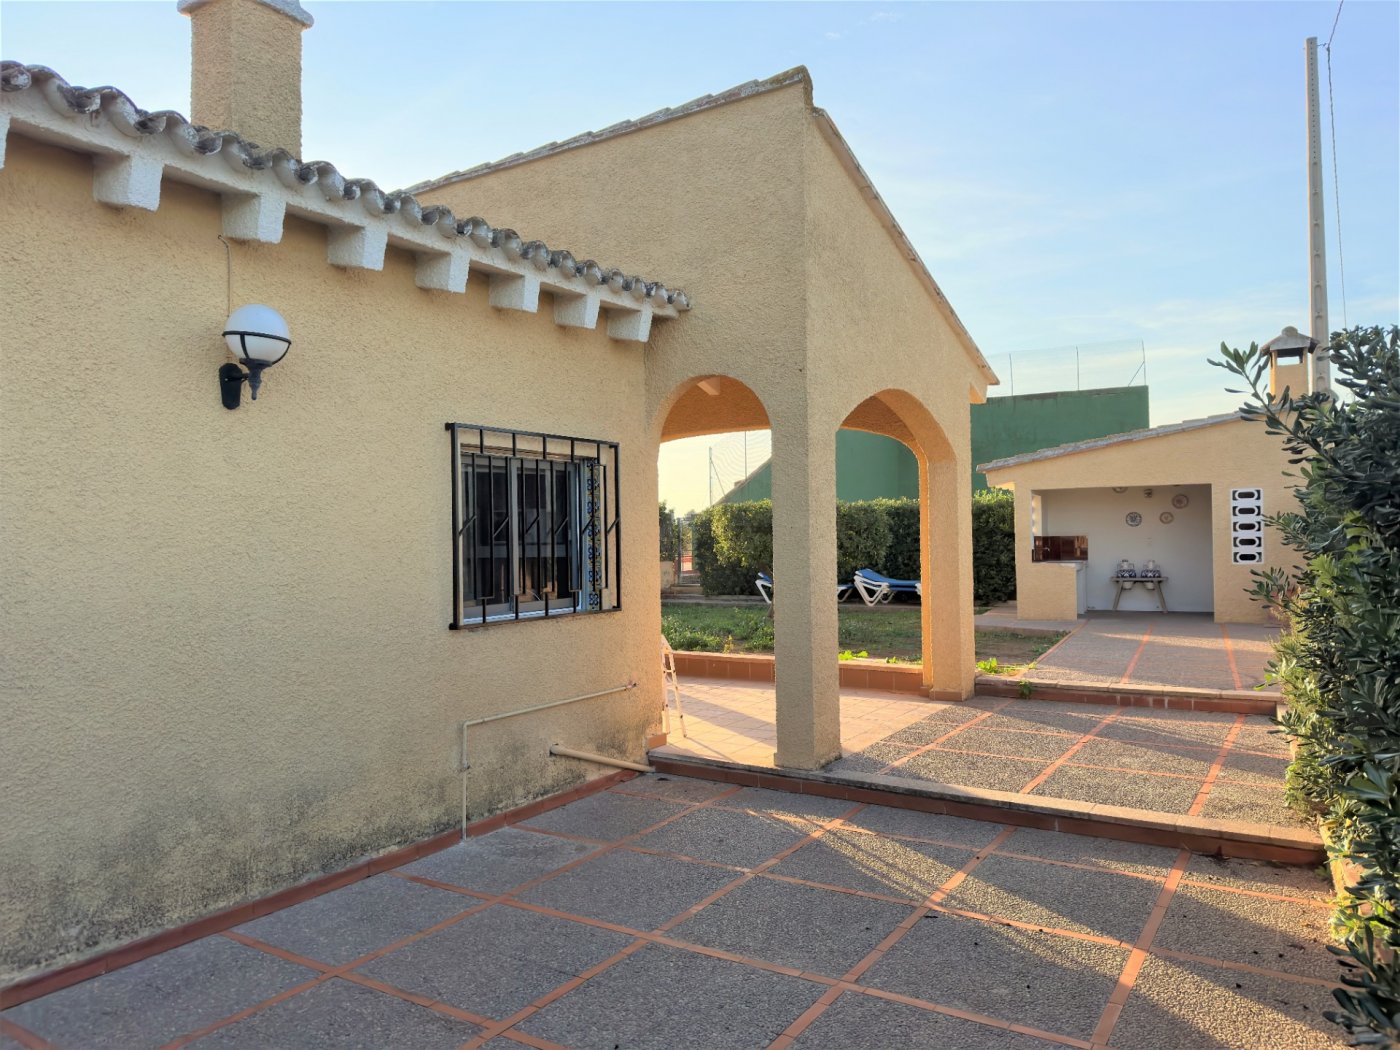 Villa in Betera located in the area of Urb. The Conarda